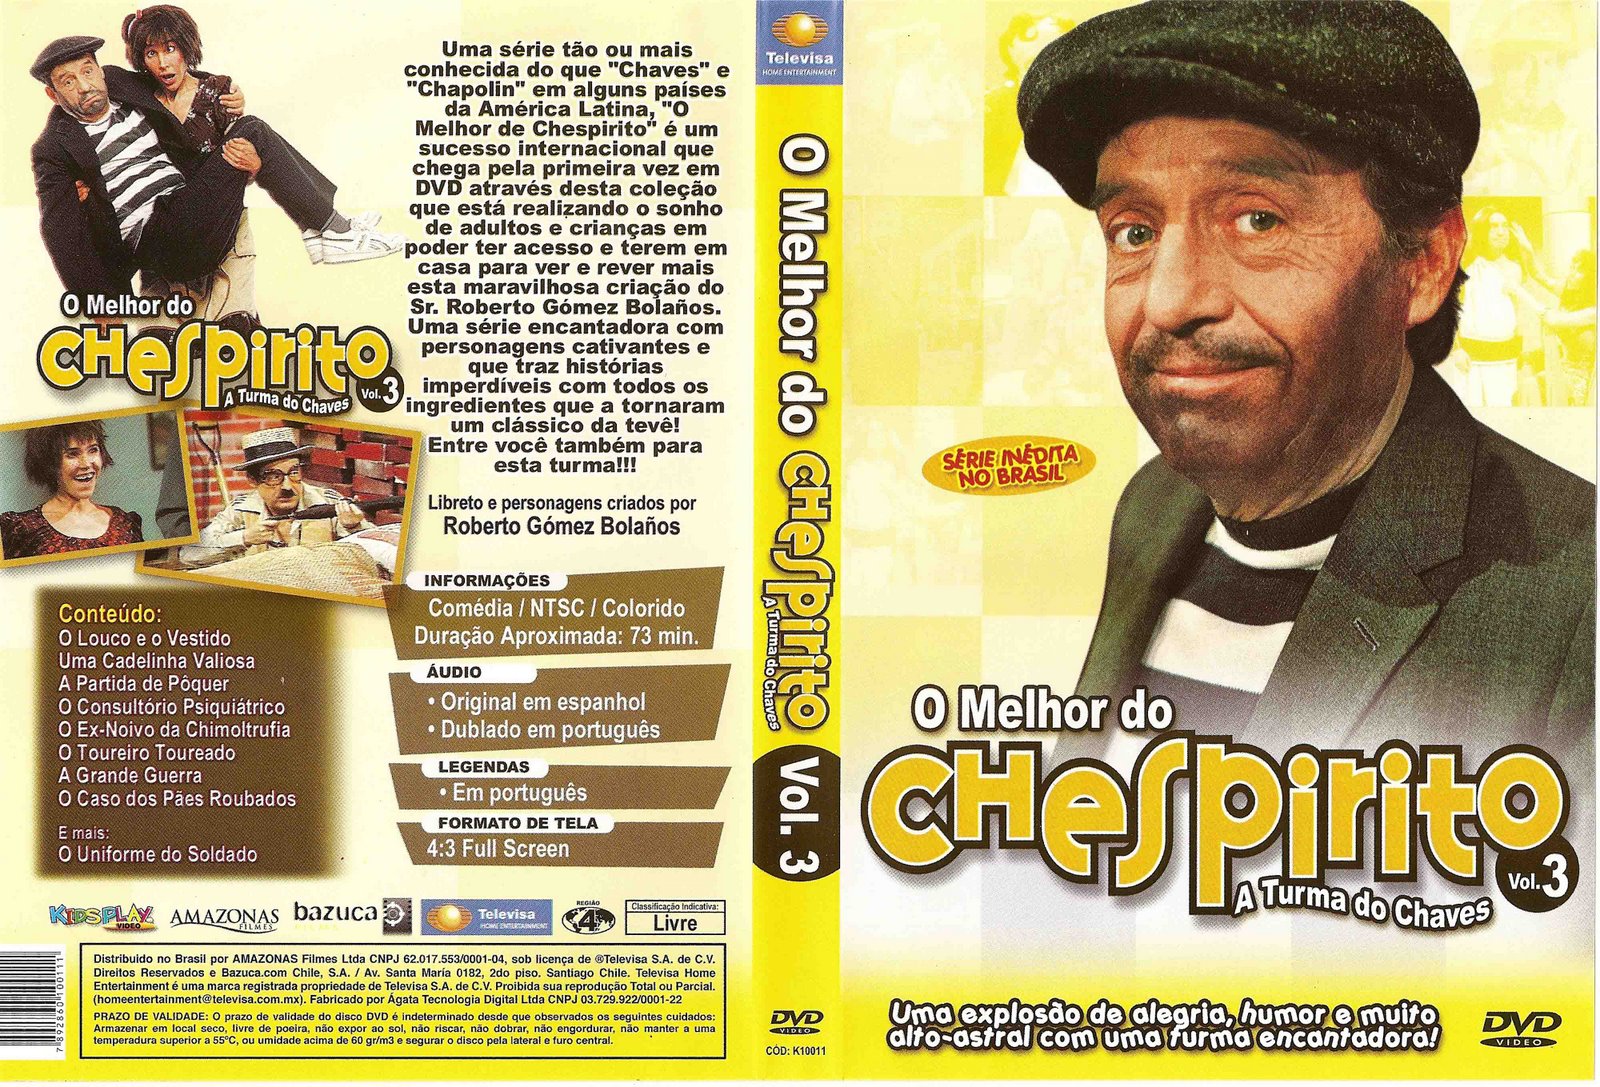 Chespirito, Vol. 3 movie